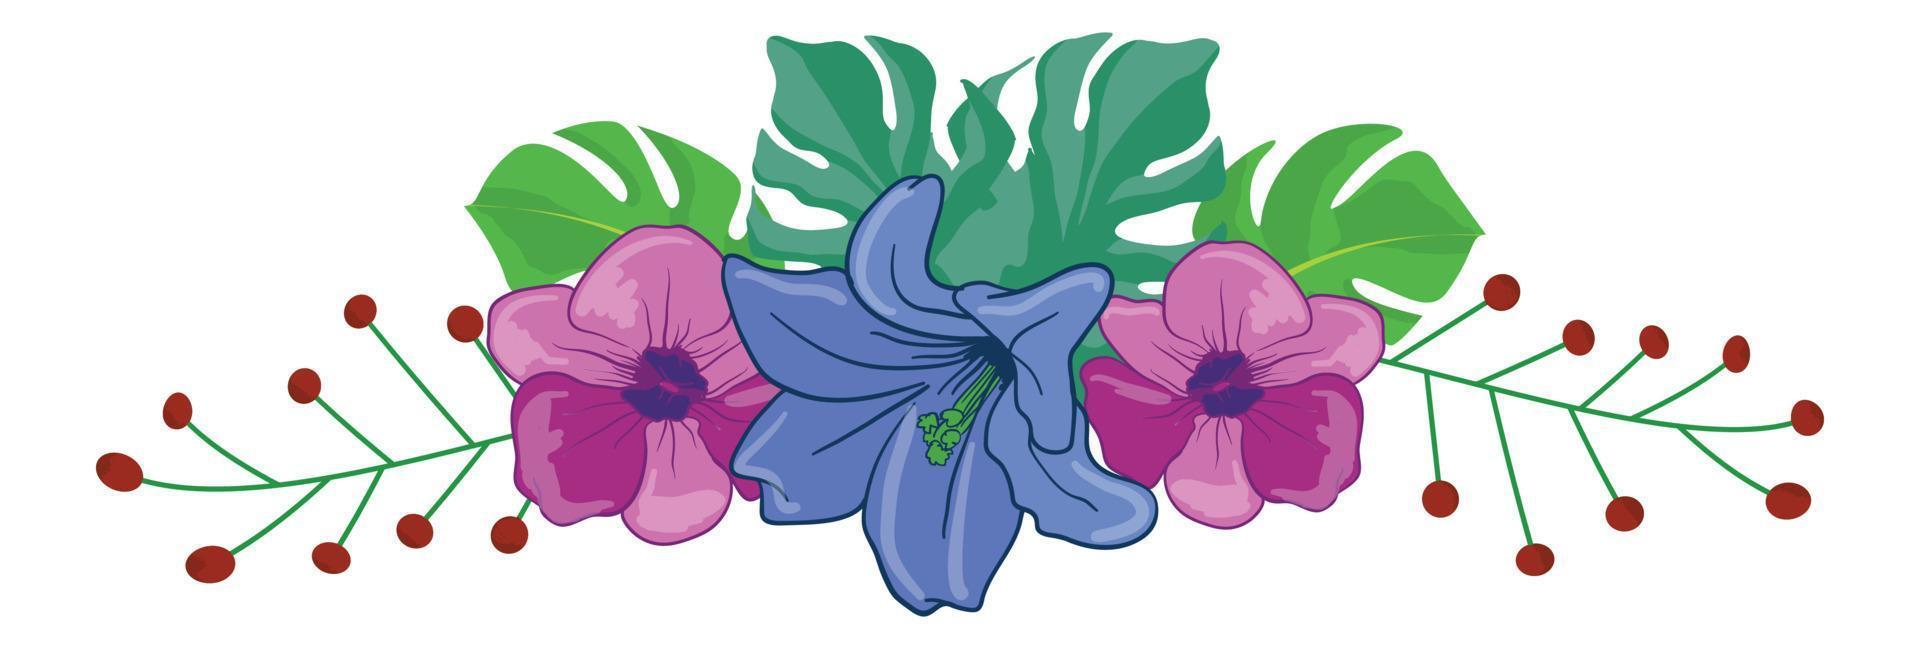 blume floral illustriertes arrangement vektor